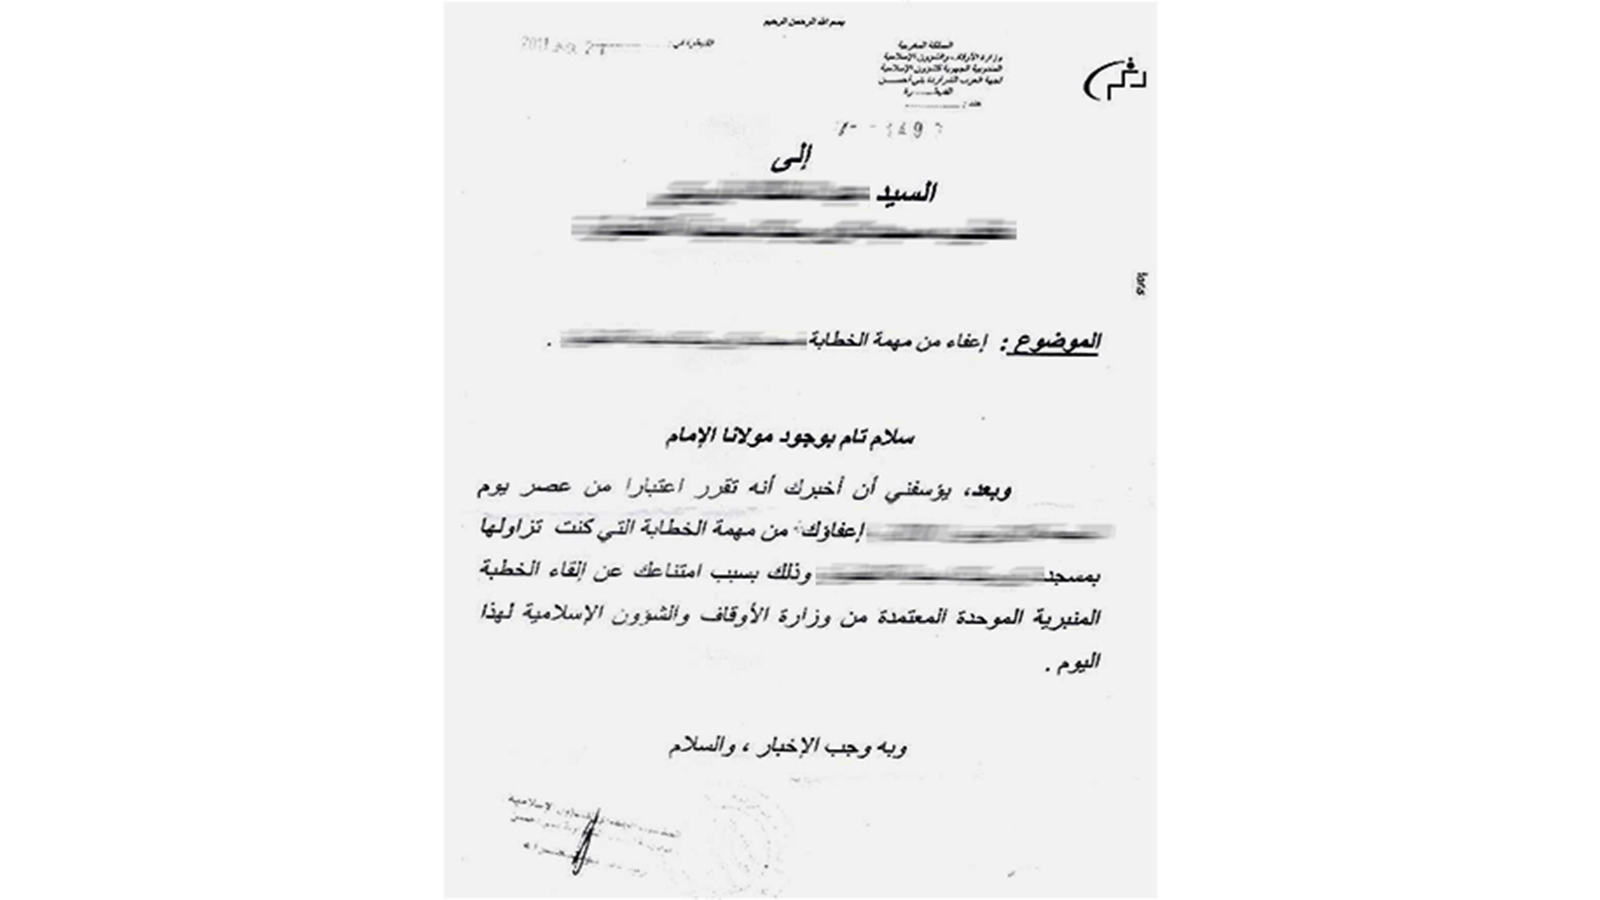 ‪نموذج لقرار وزارة الأوقاف إعفاء أحد الخطباء‬ نموذج لقرار وزارة الأوقاف إعفاء أحد الخطباء (الجزيرة)